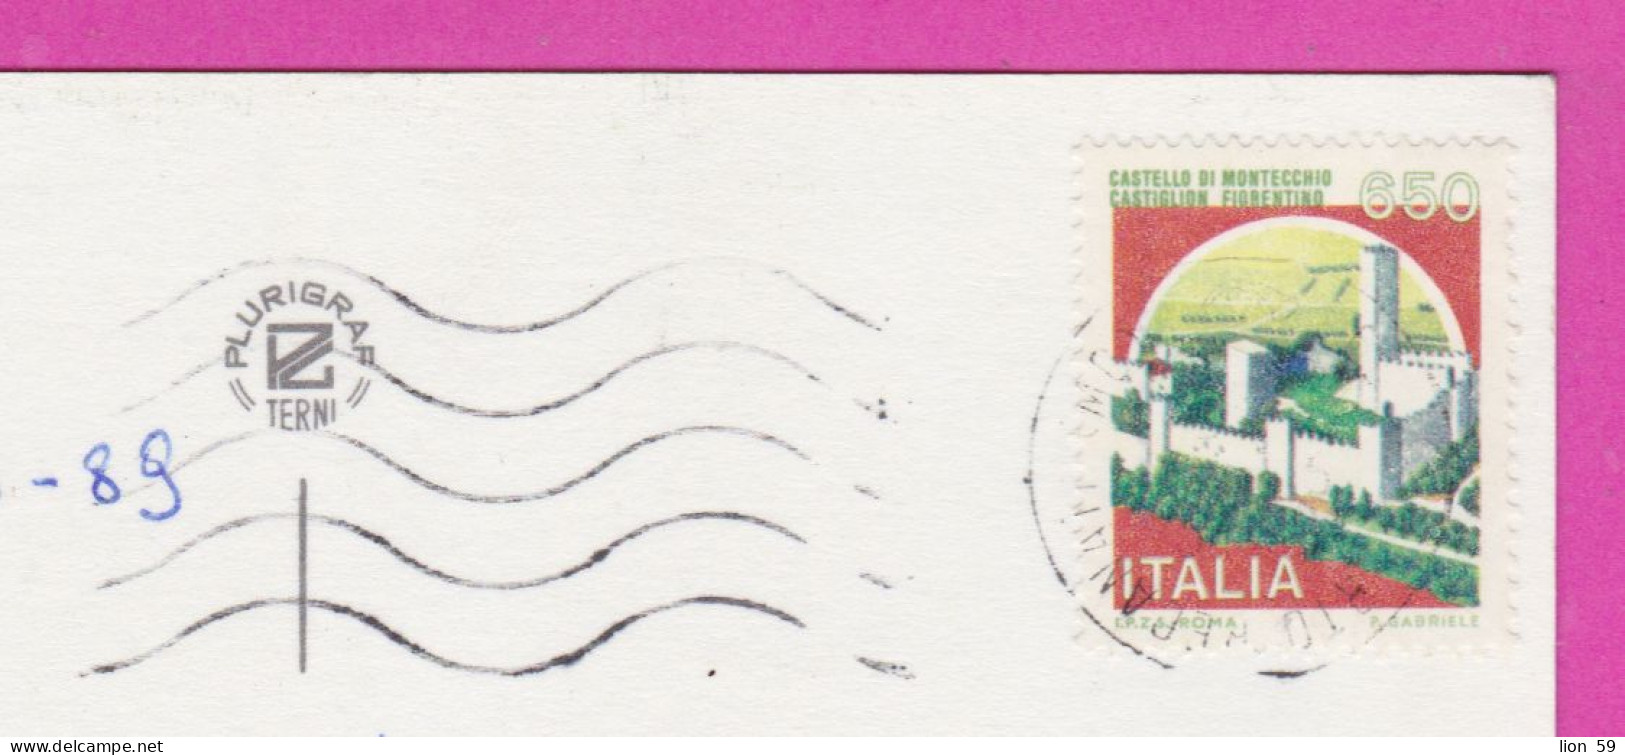 293891 / Italy - Rivera Del CONERO PC 1989 Porto Recanati USED 650 L Castello Di Montecchio, Castiglion Fiorentino - 1981-90: Marcophilie